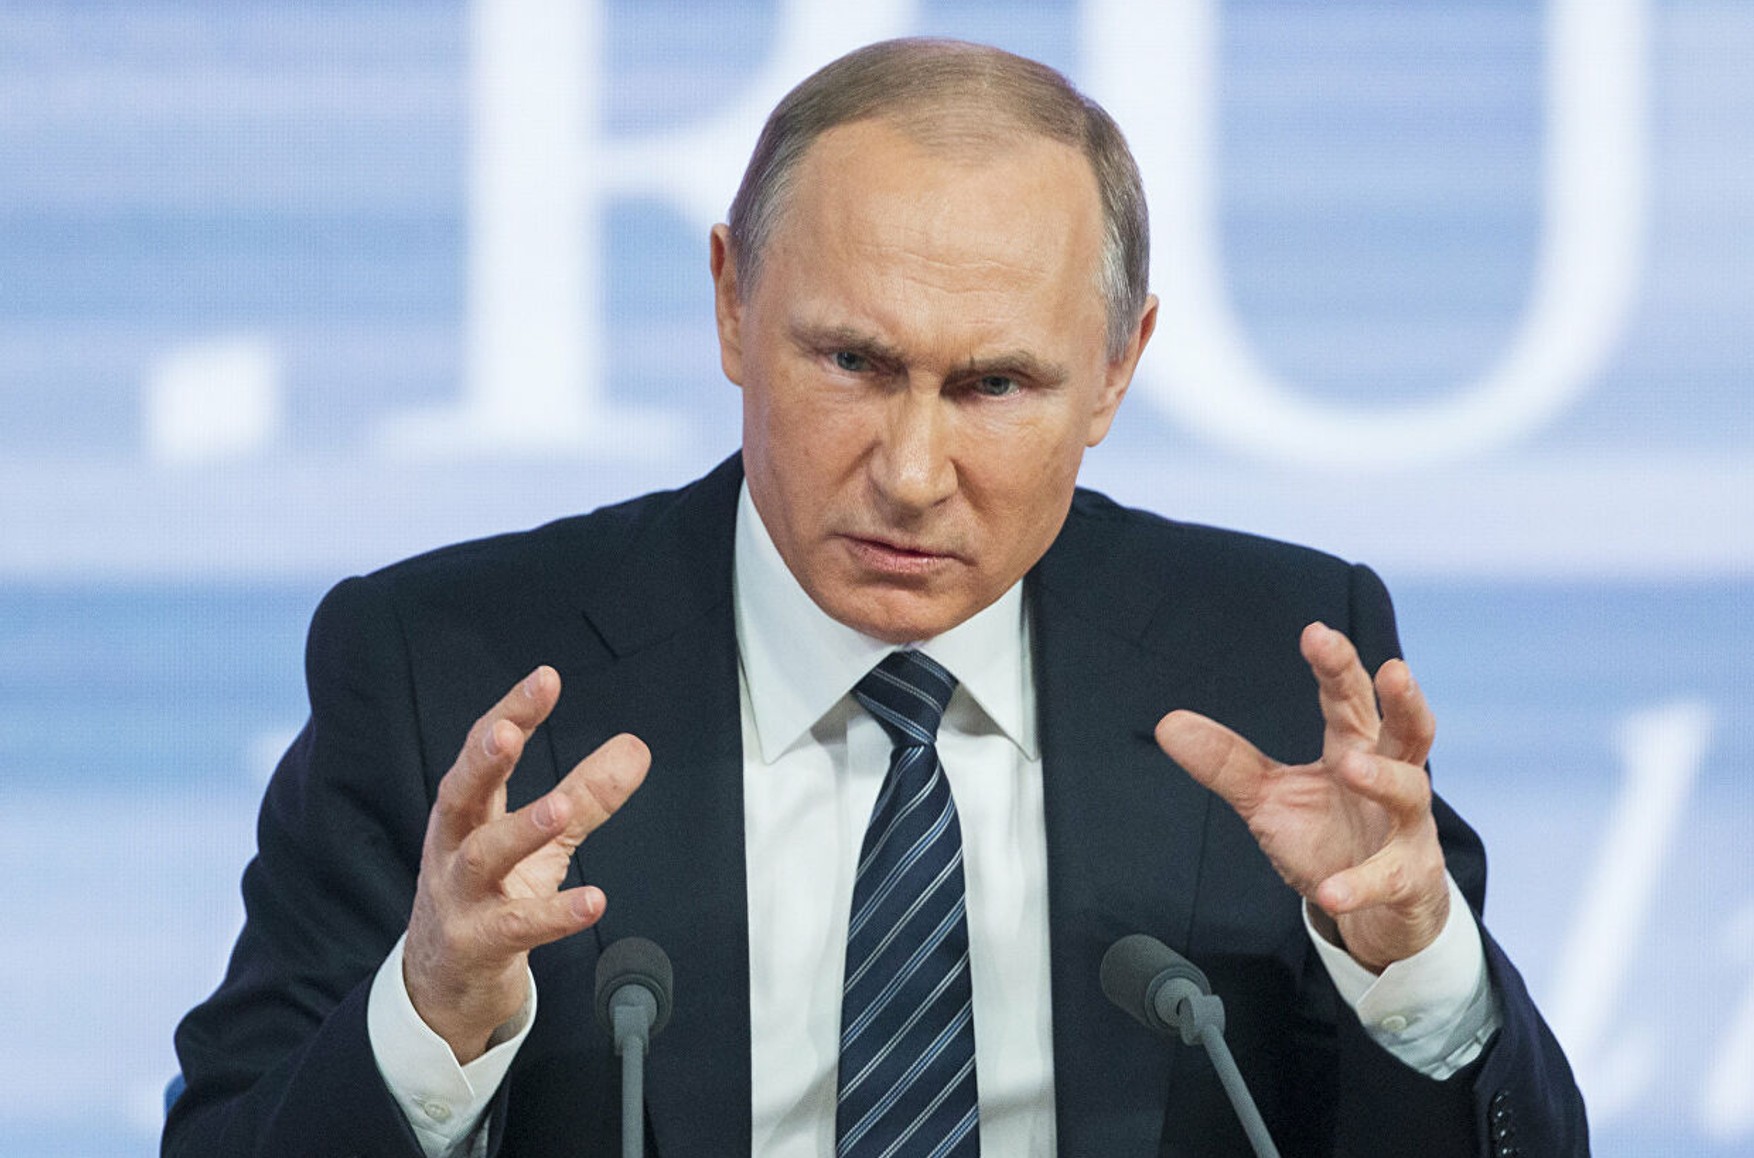  «Путин не сможет избежать ответственности за зверства». Сенат США единогласно назвал президента России военным преступником